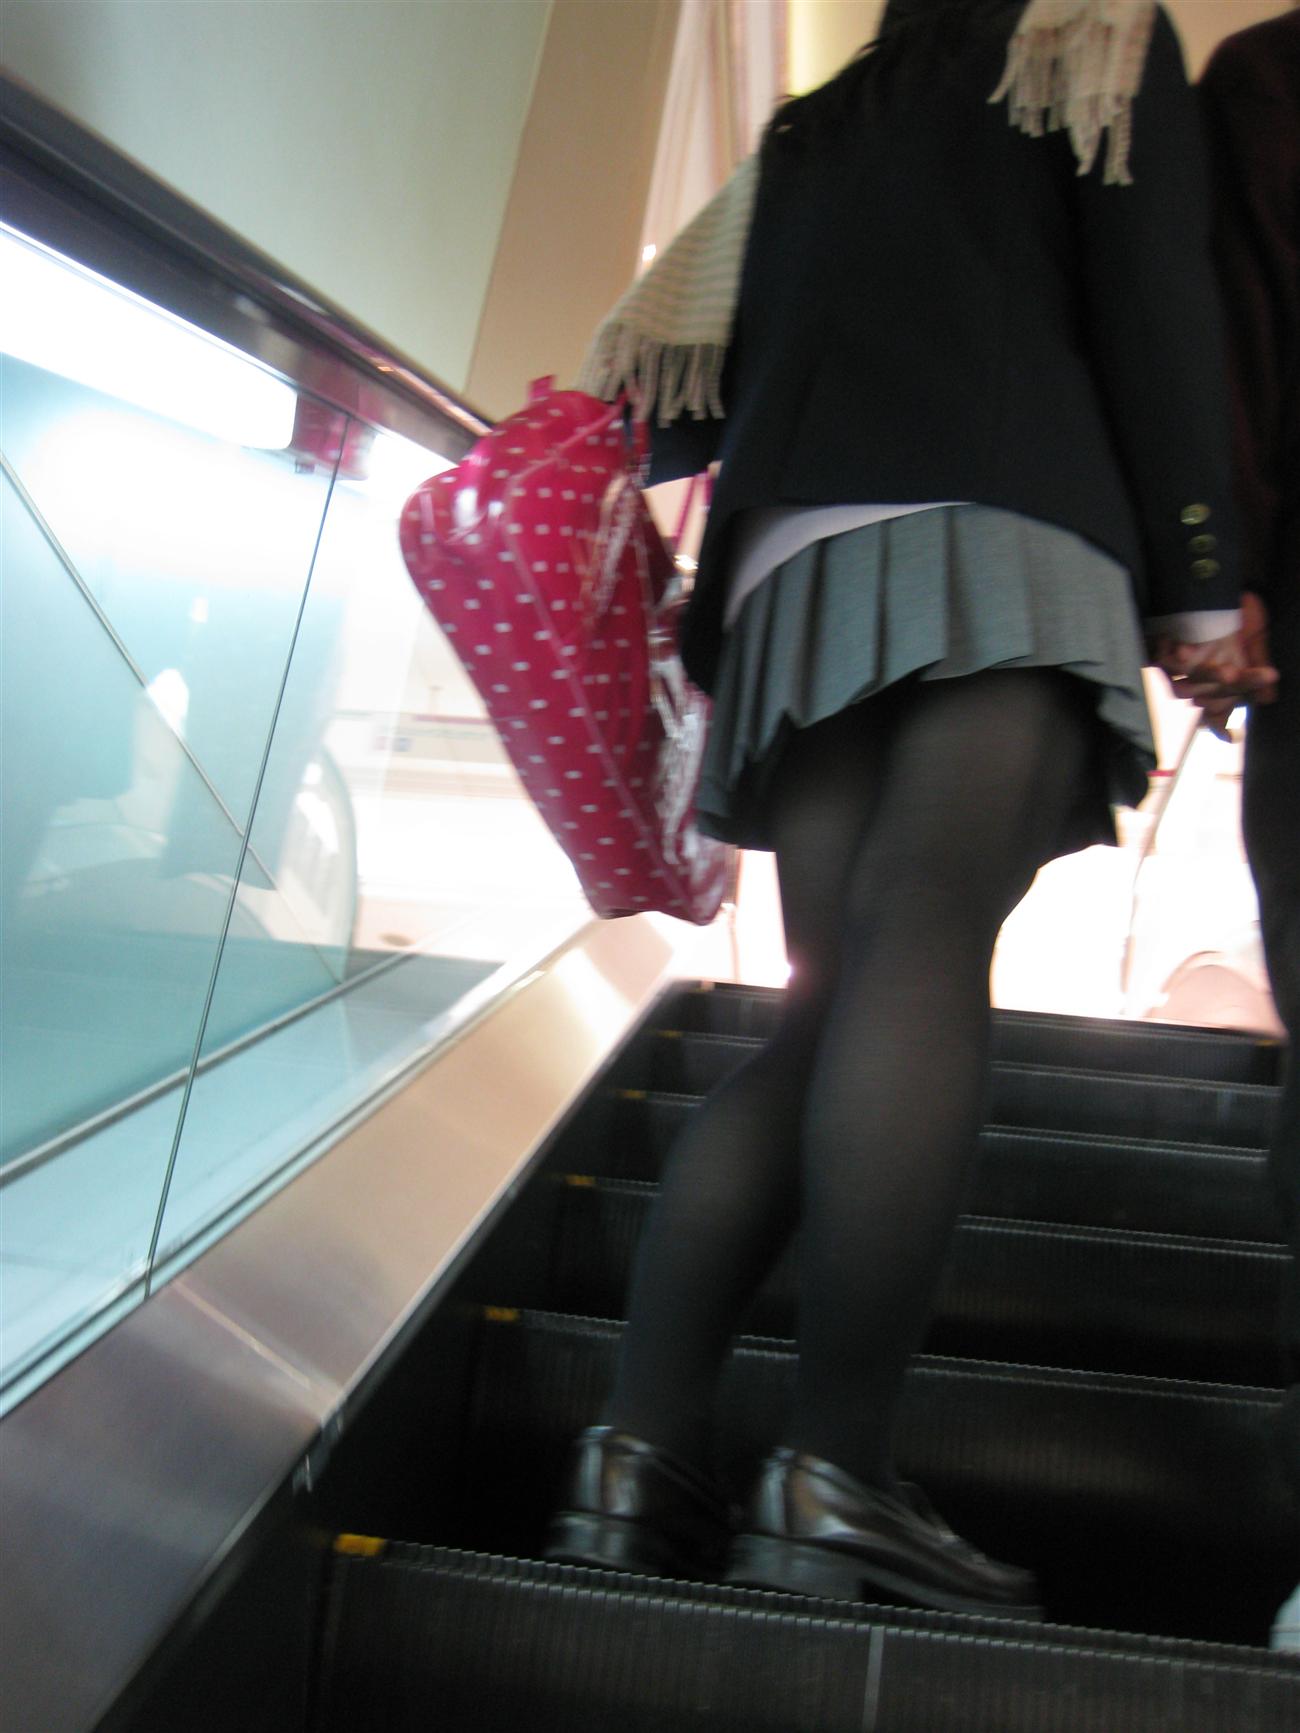 【街撮りJK画像】黒タイツ履いたお嬢様っぽいJKたちの美脚に見とれる画像 19